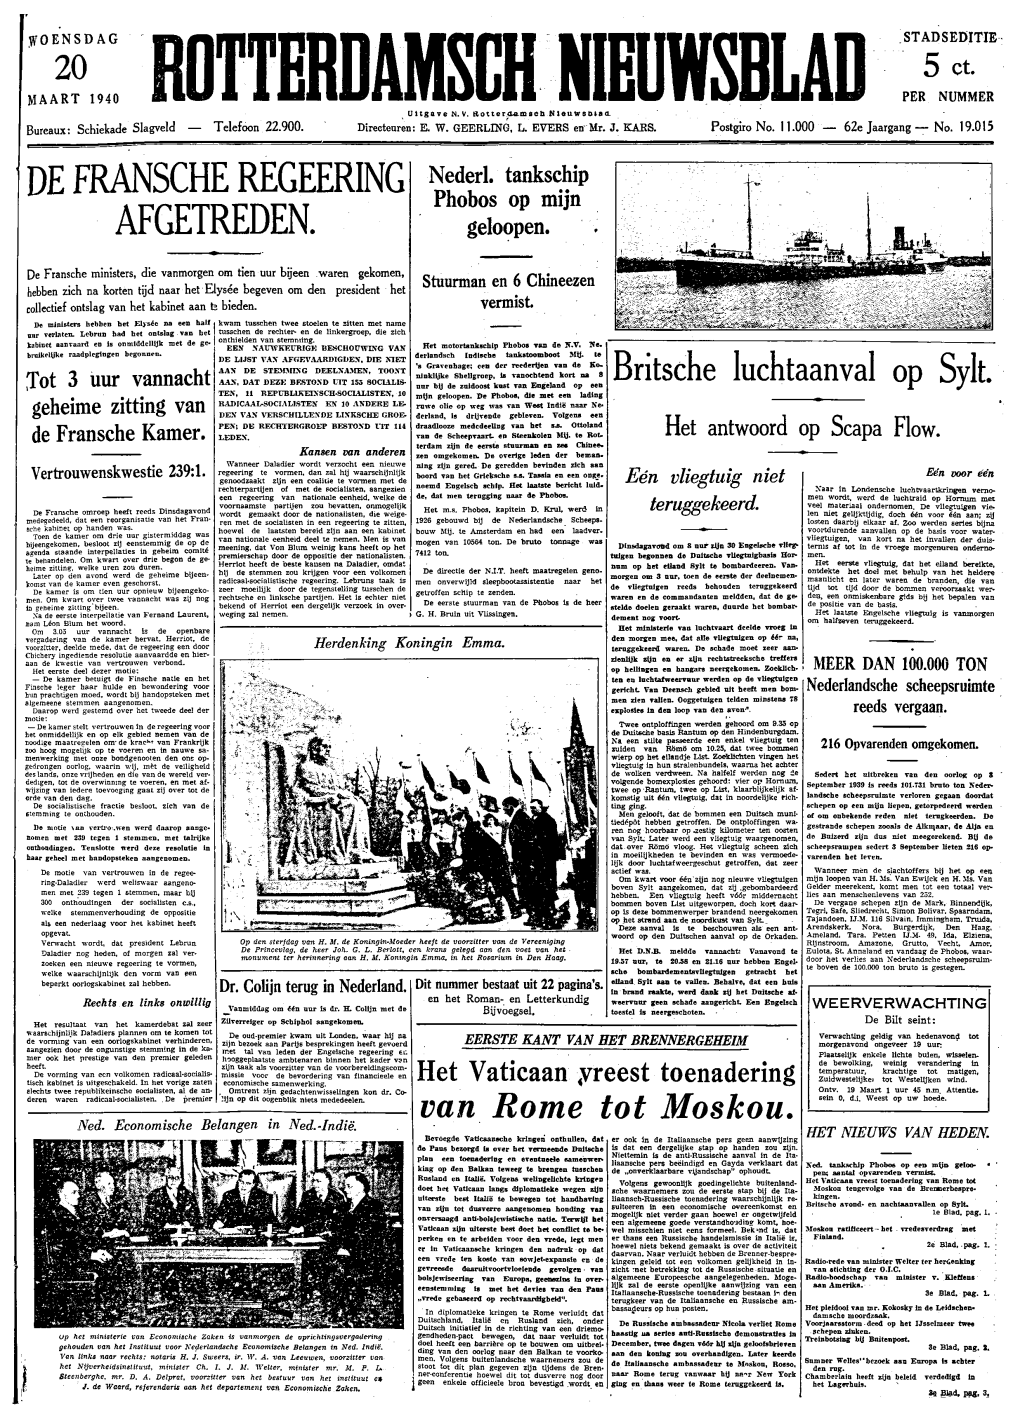 Rotterdamsch Nieuwsblad Woensdag 20 Maart 1940 Stadhuisbouw Zonder Krakeel